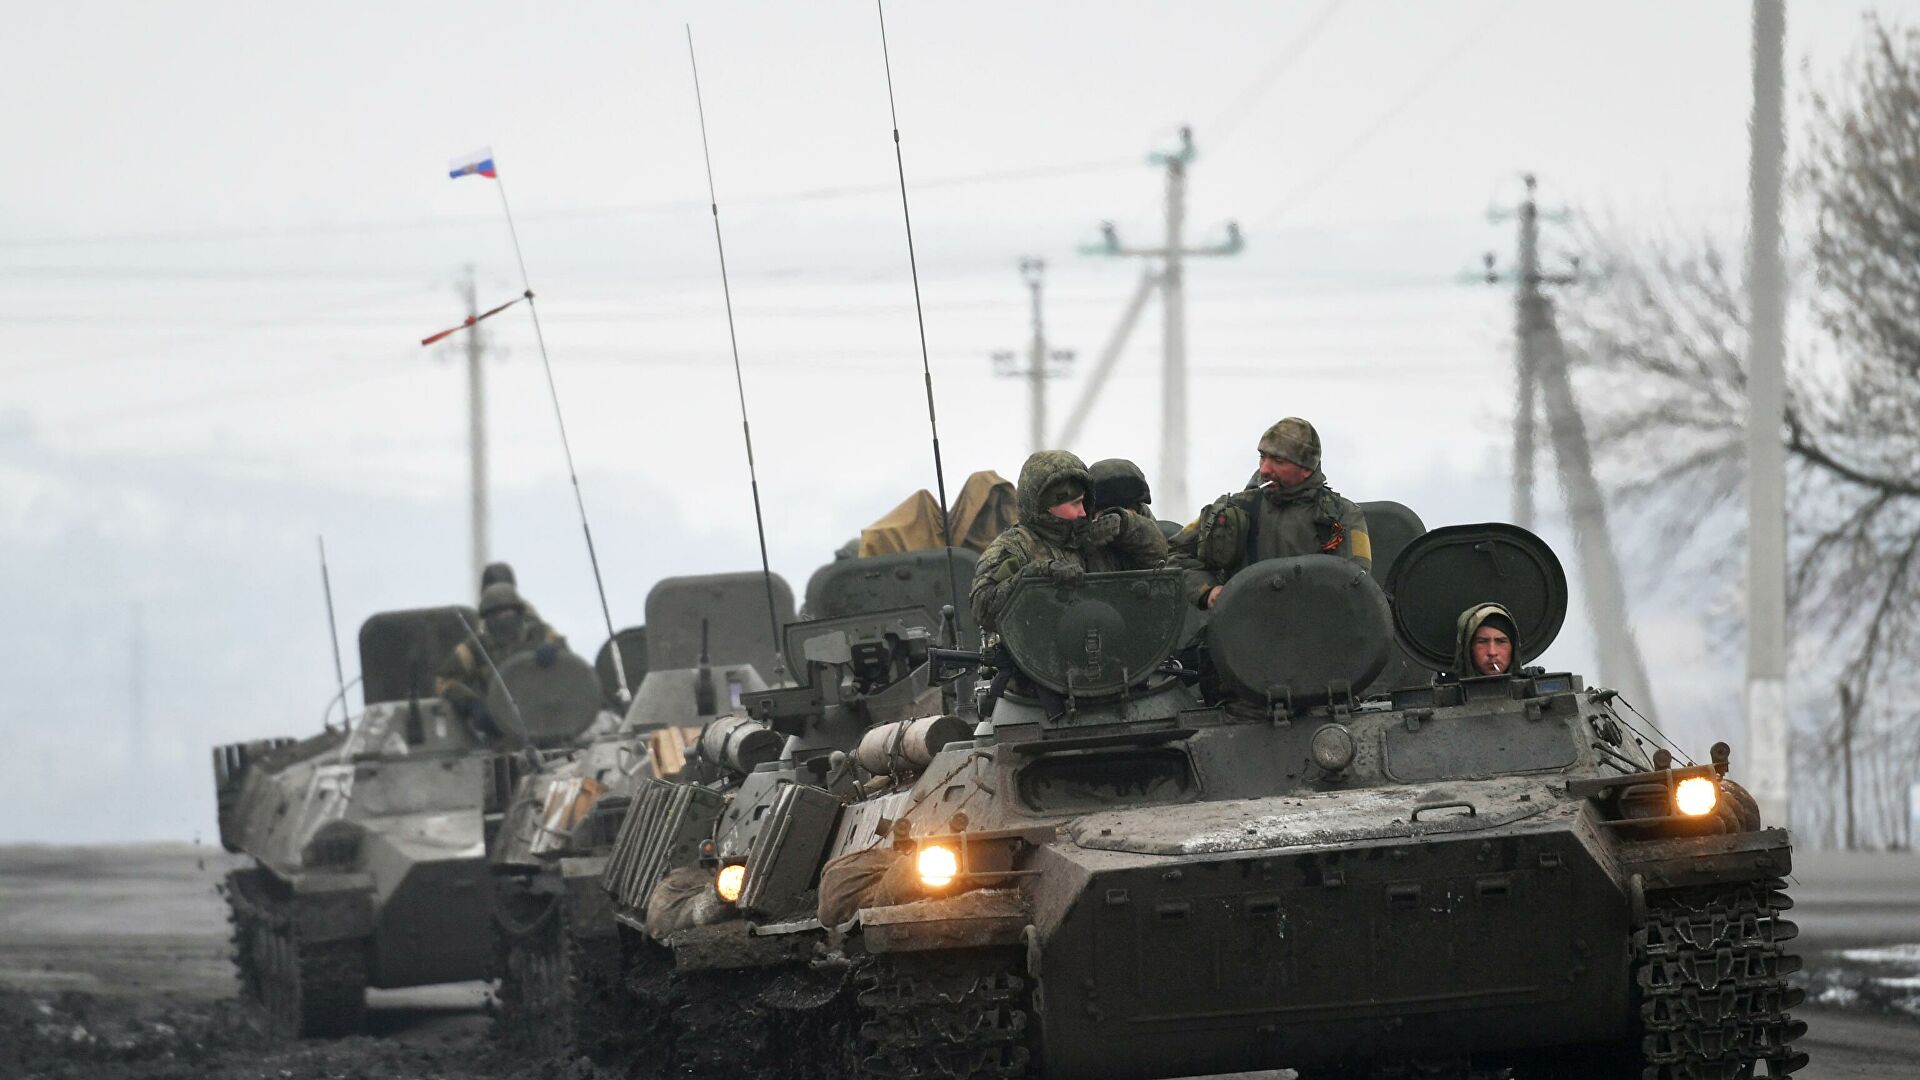 Ռուսական ռազմական գործողություններ Ուկրաինայում, օր 16 (թարմացվող առցանց լուսաբանում)